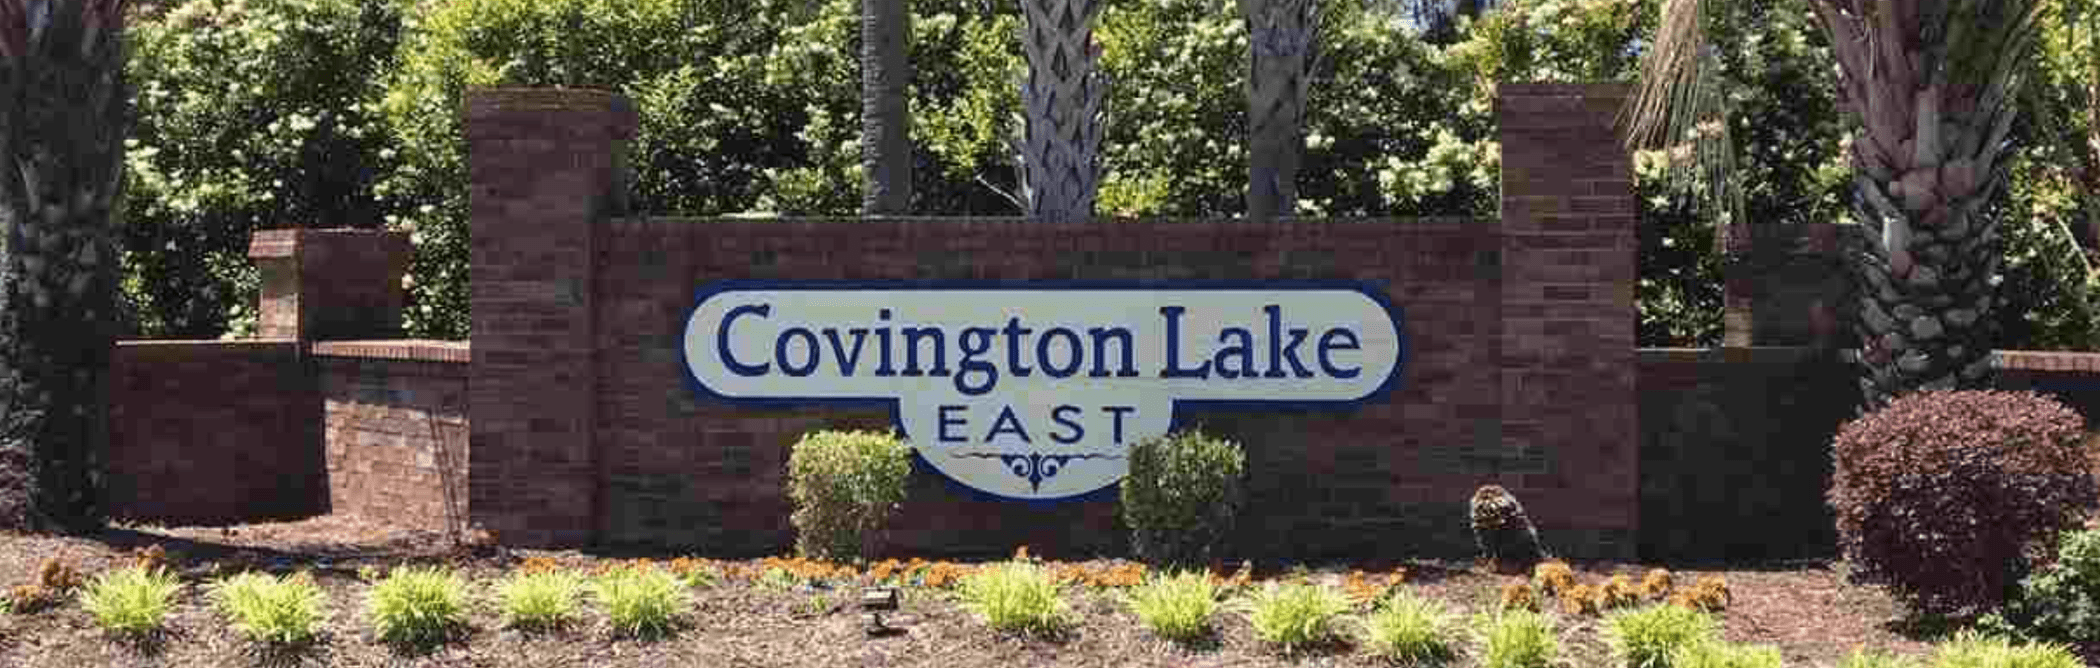 Covington Lake East Homes for Sale